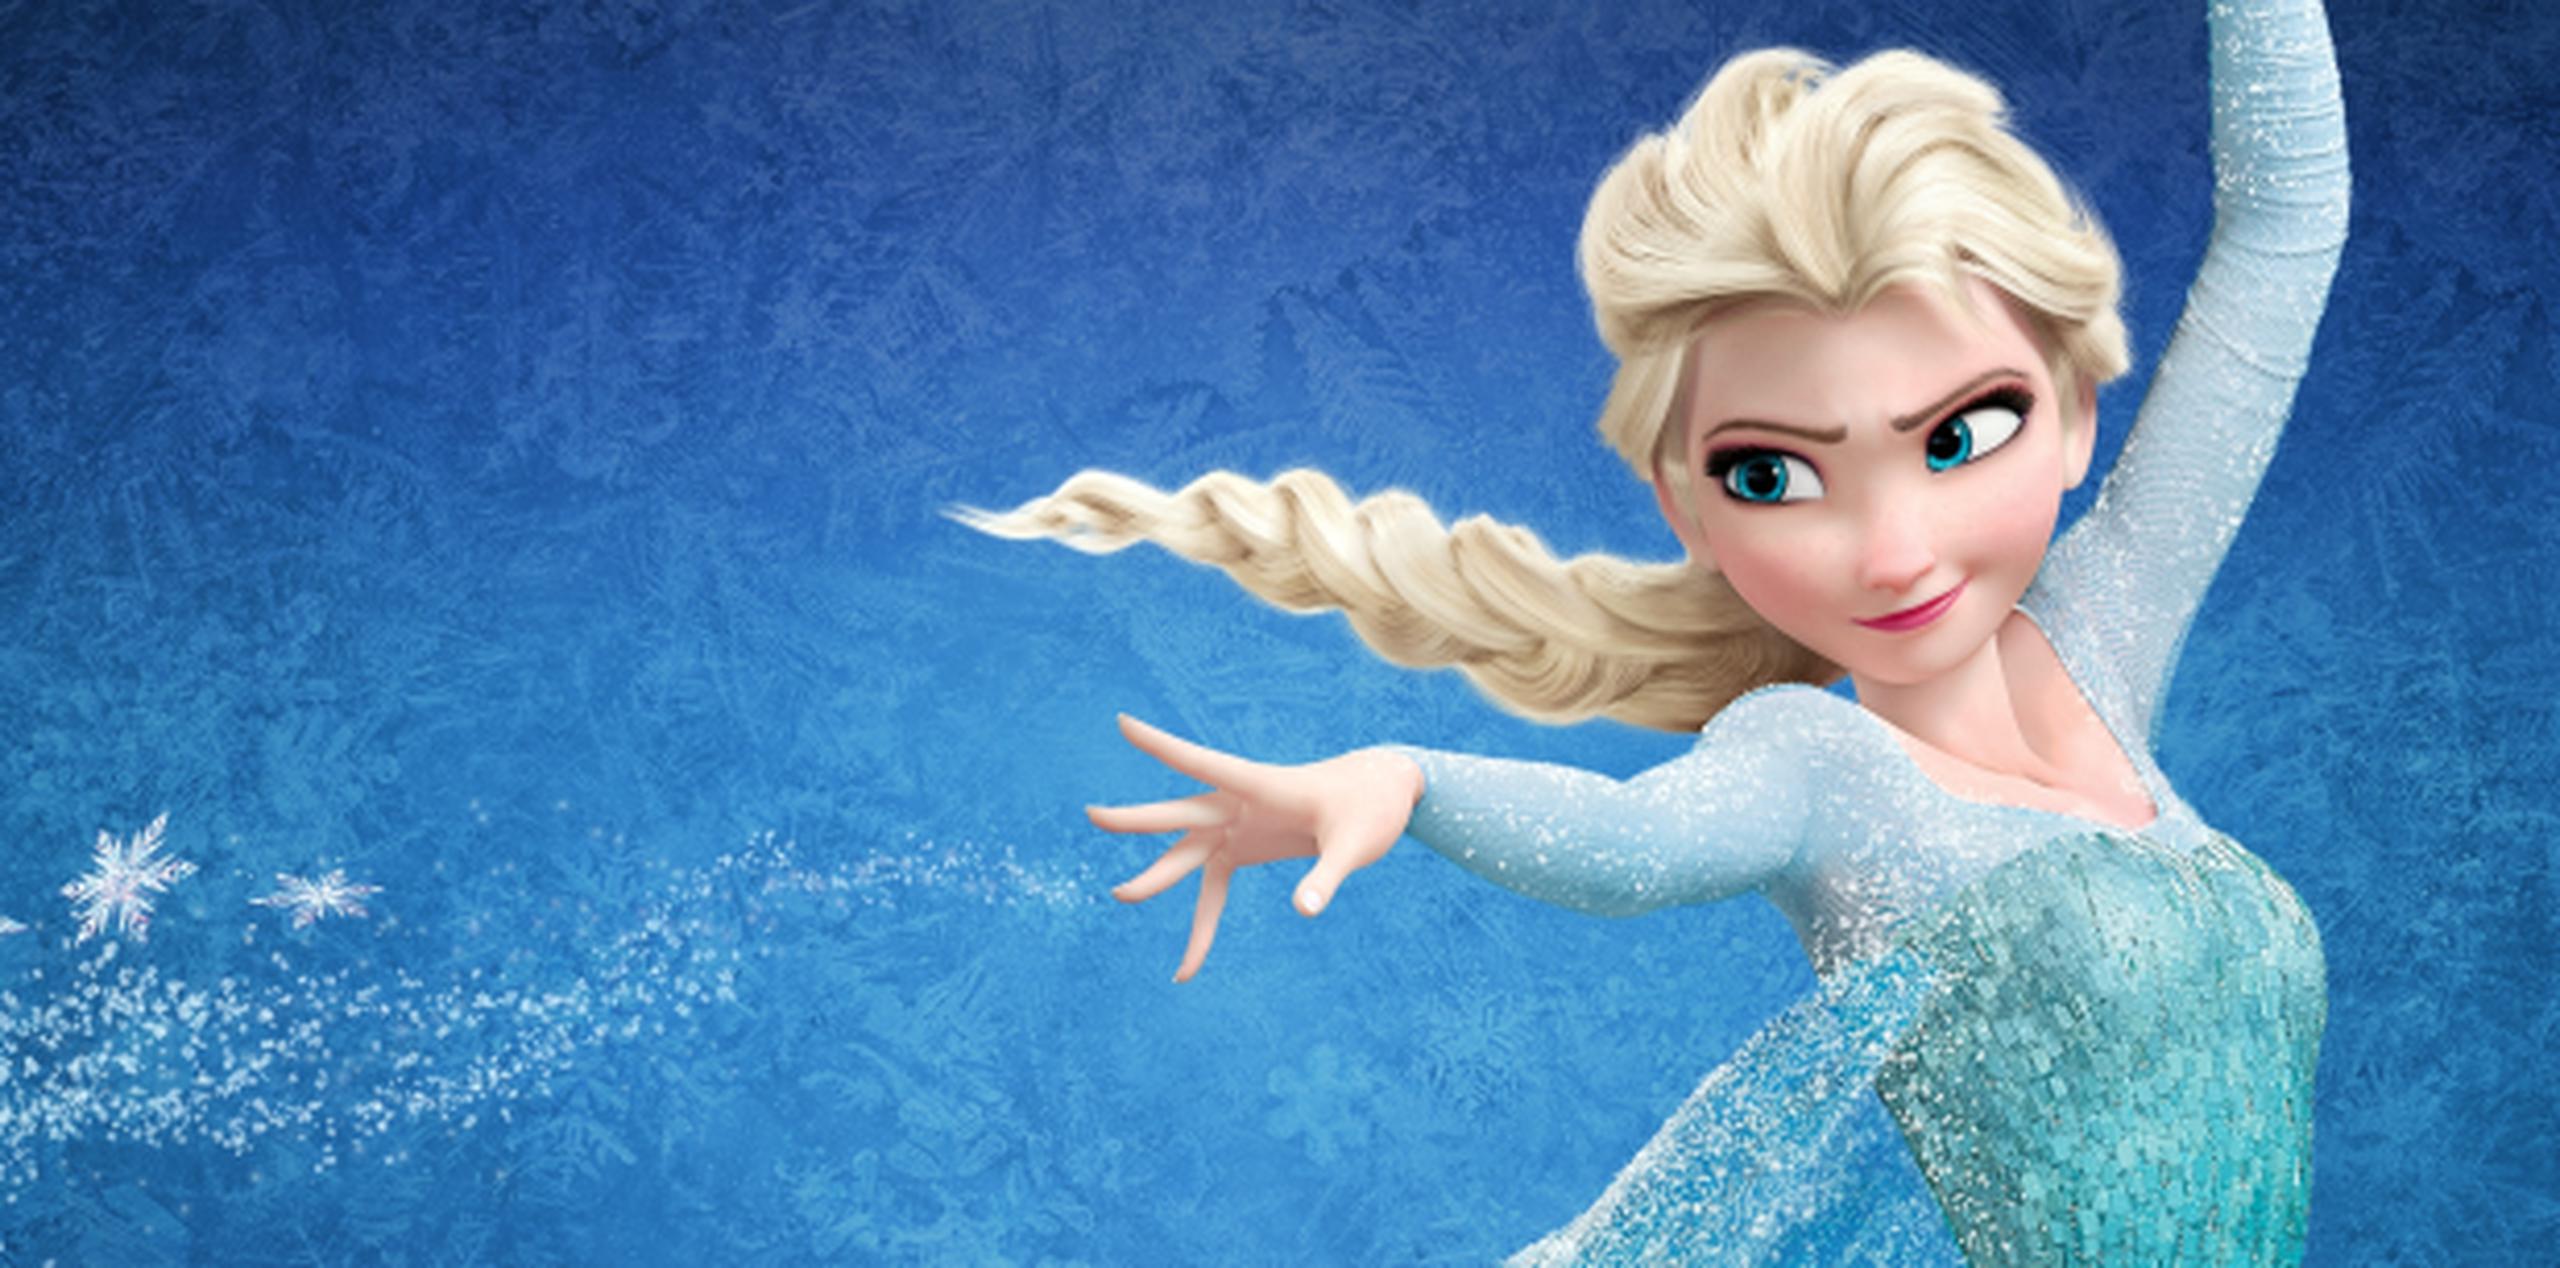 En la taquilla está funcionando. "Frozen" ha recaudado más de 1,200 millones de dólares a nivel global, posicionándose como la quinta película más lucrativa de la historia. (Archivo)